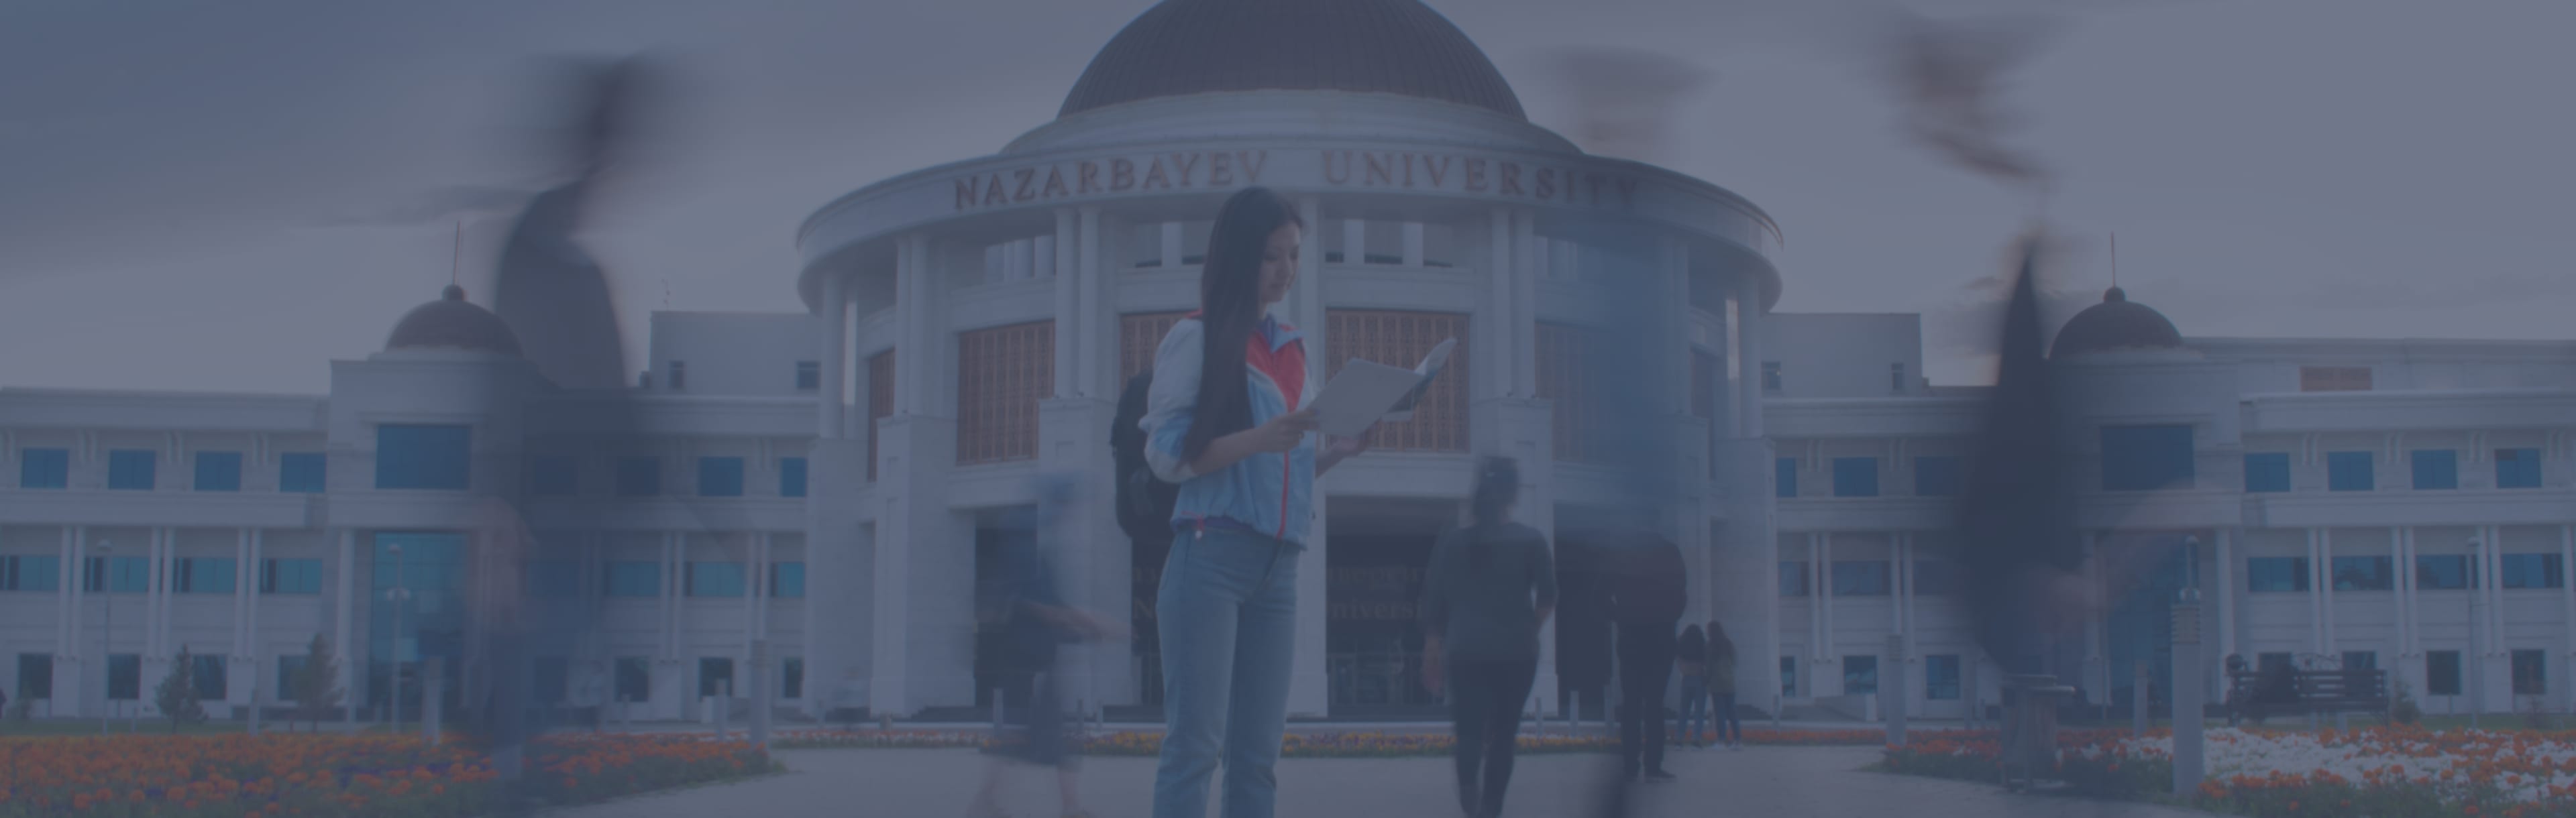 Nazarbayev University دکتری شیمی